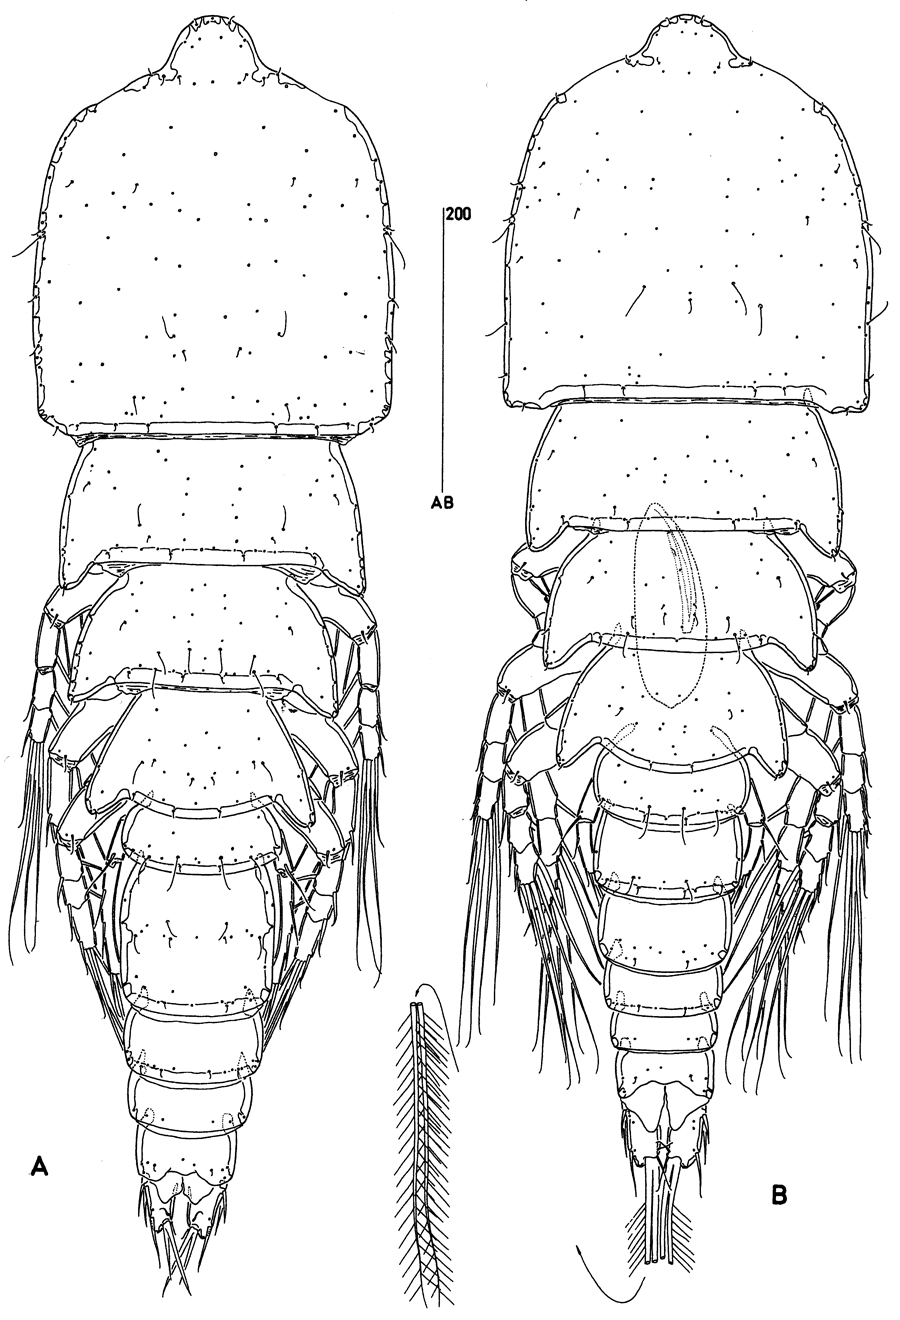 Species Clytemnestra farrani - Plate 1 of morphological figures